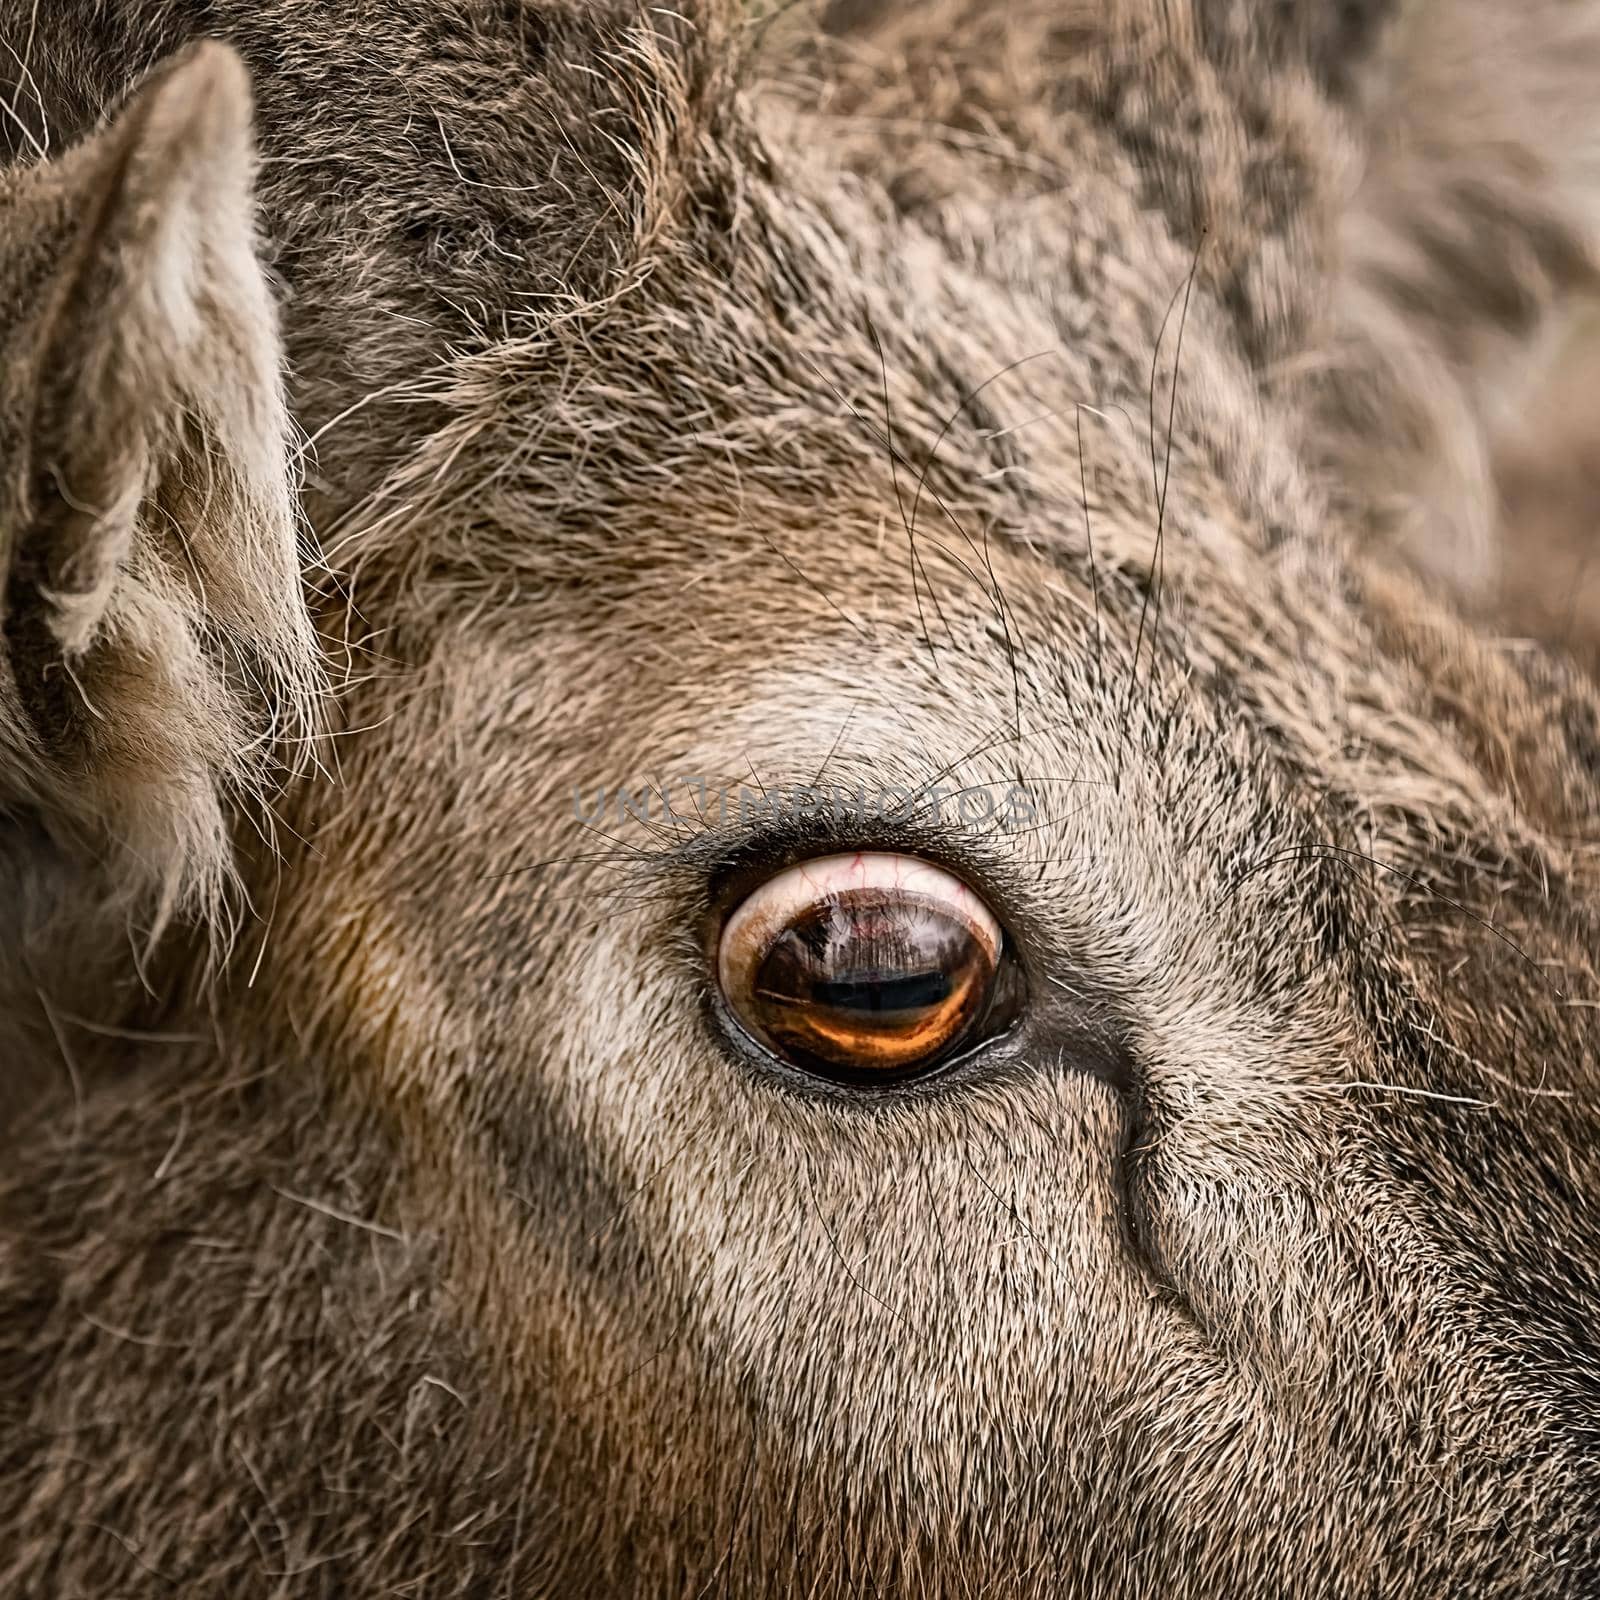 Eye of a deer by SNR